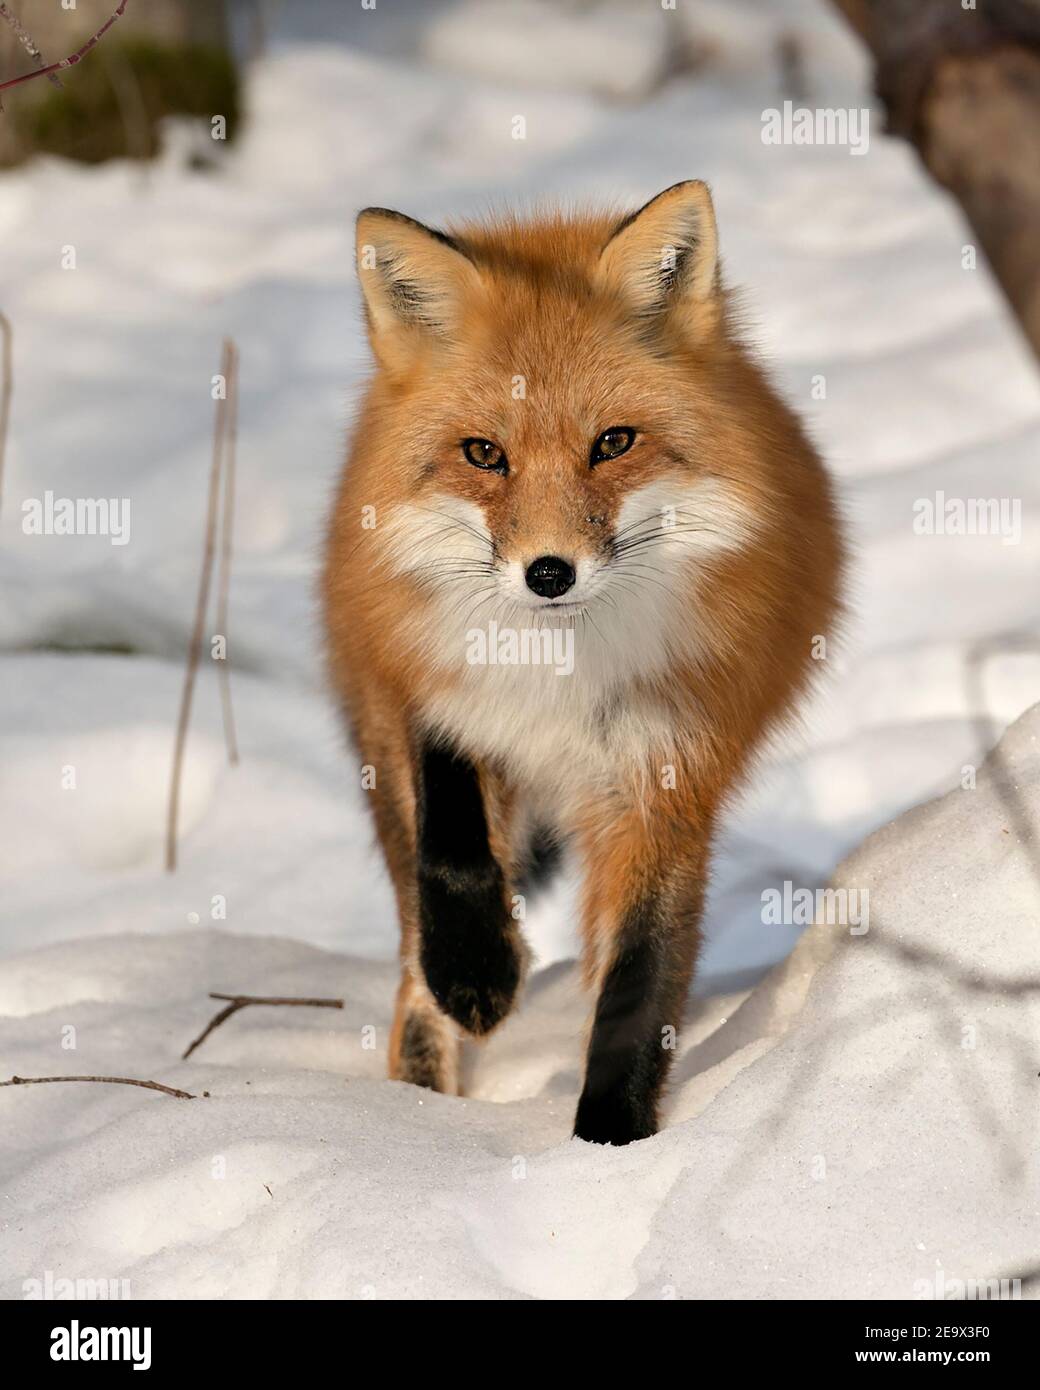 Rotfuchs Nahaufnahme Profil Seite Kopf erschossen Ansicht in der Wintersaison in seiner Umgebung und Lebensraum mit verwischen Schnee Hintergrund anzeigen Fell. Fox-Bild. Stockfoto